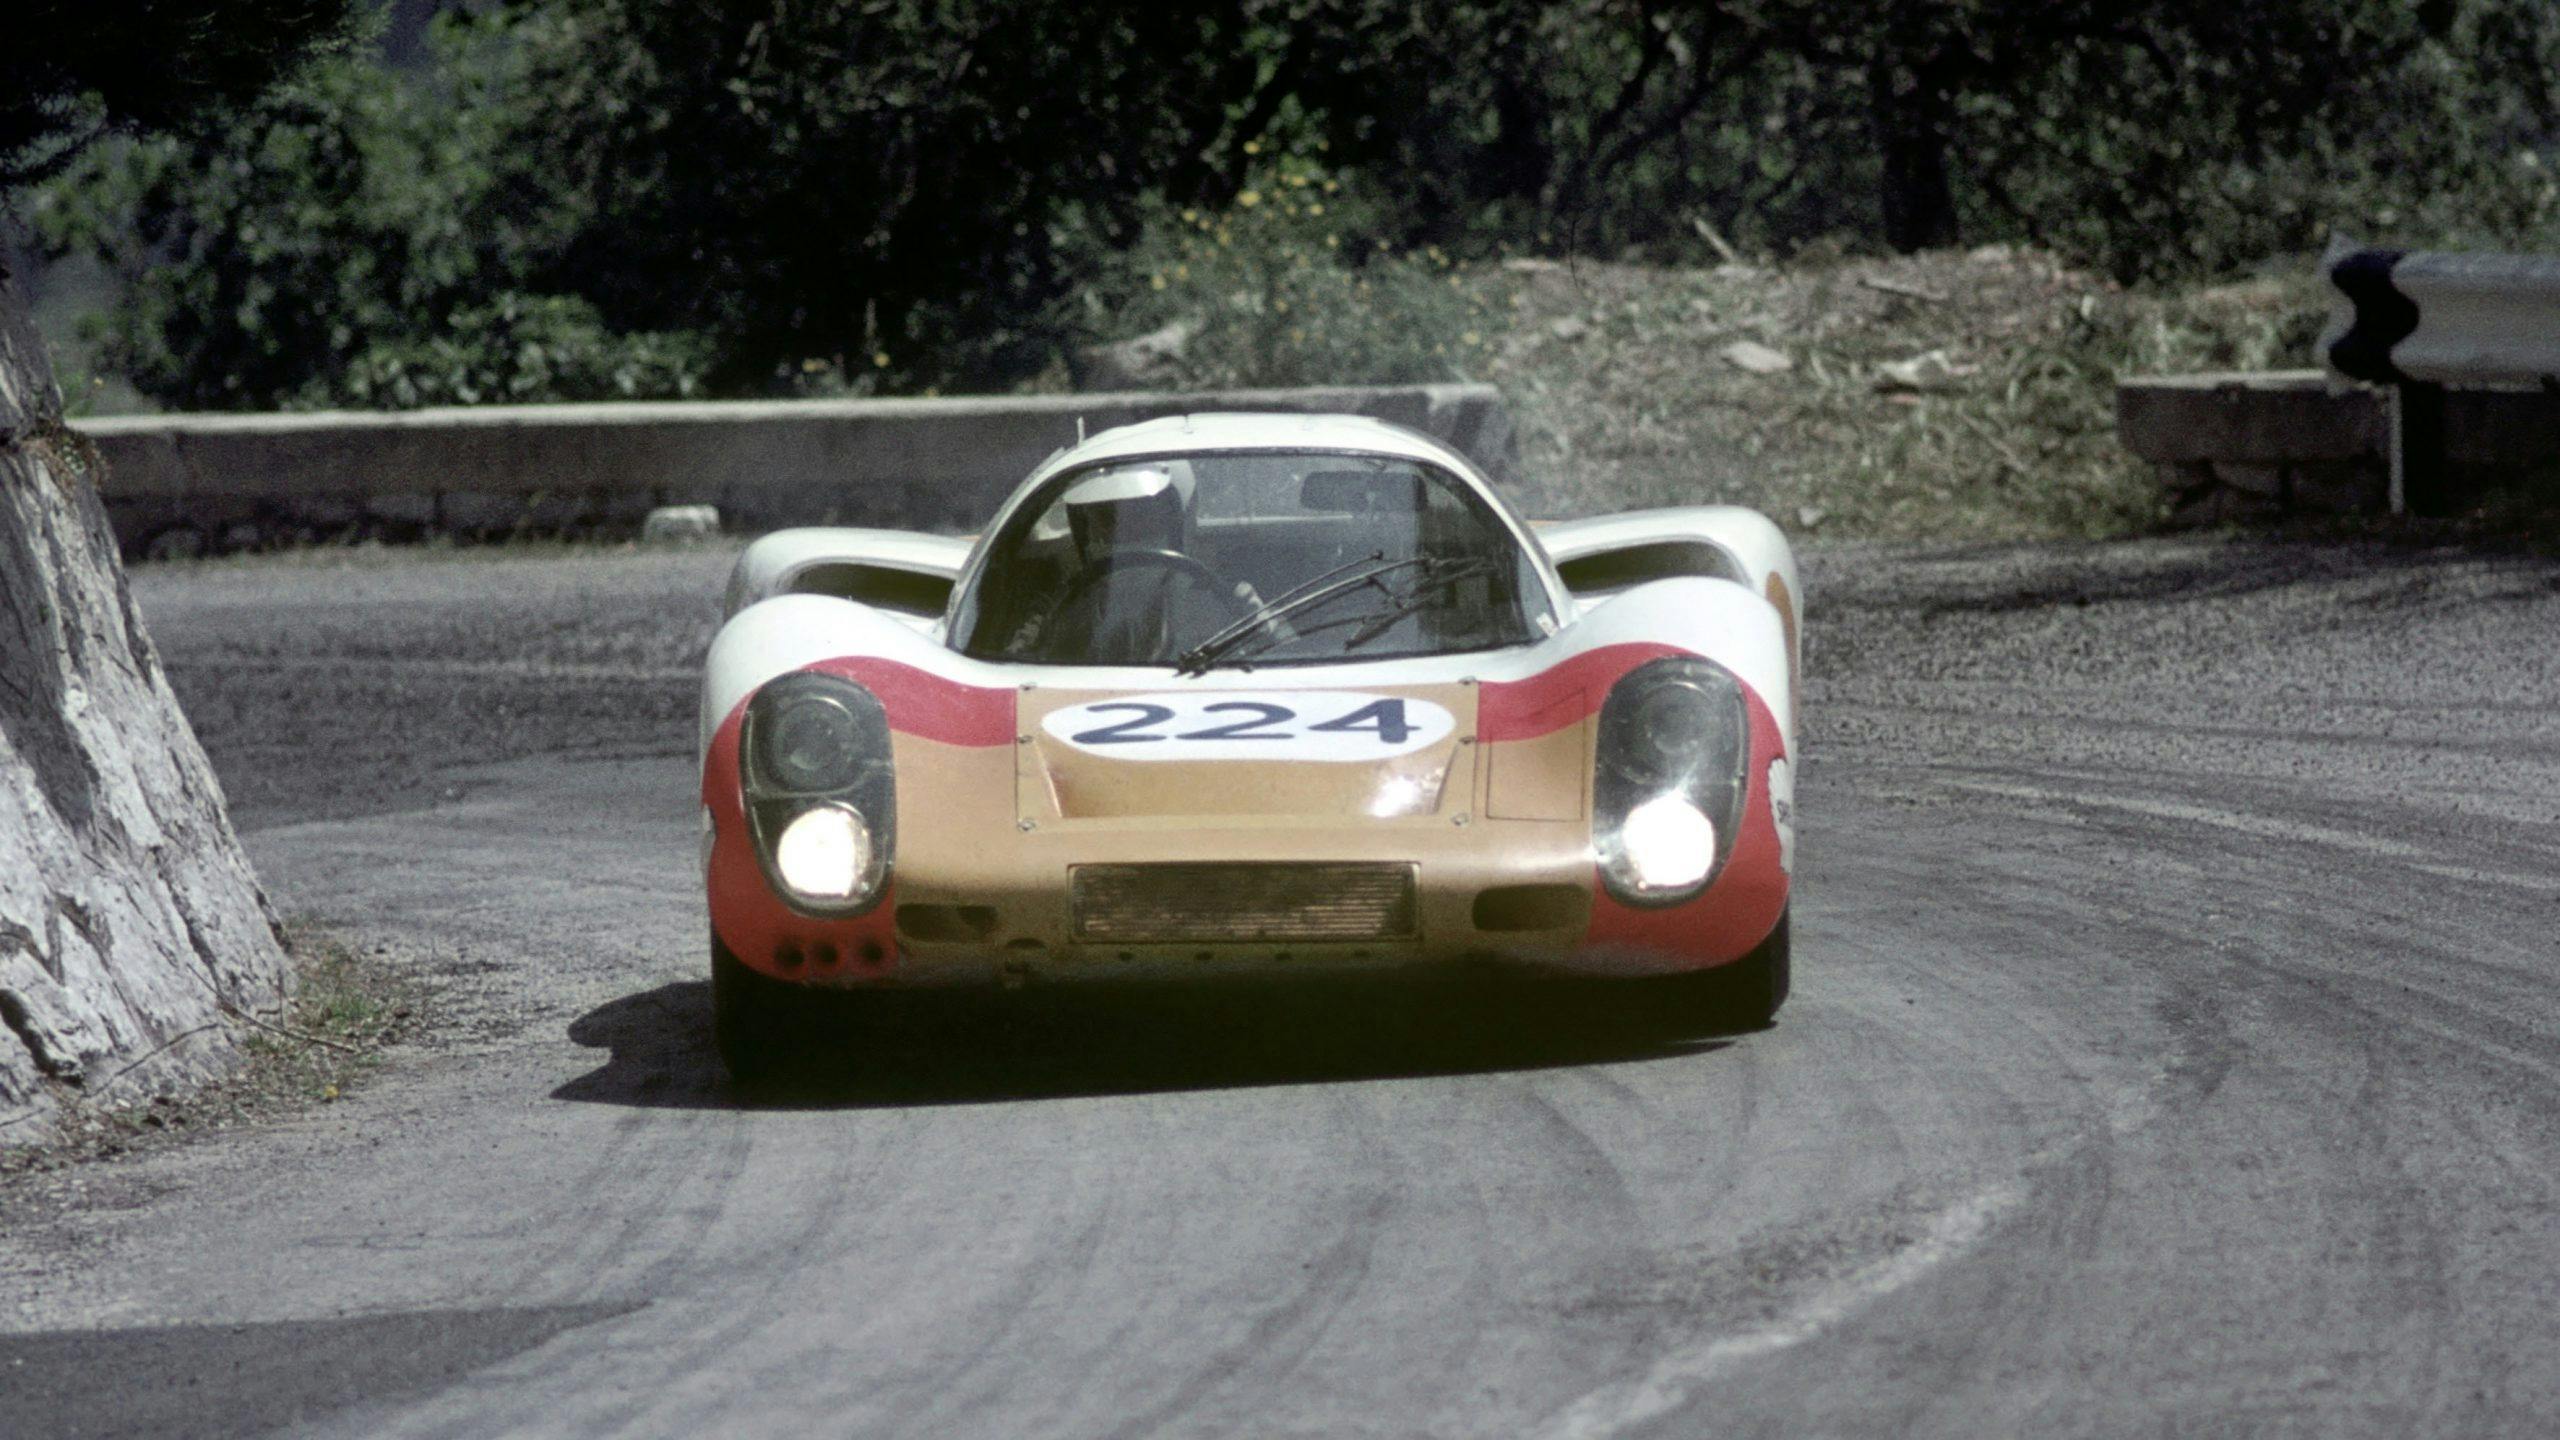 Vic Elford Porsche 907, Targo Florio 224, 1968